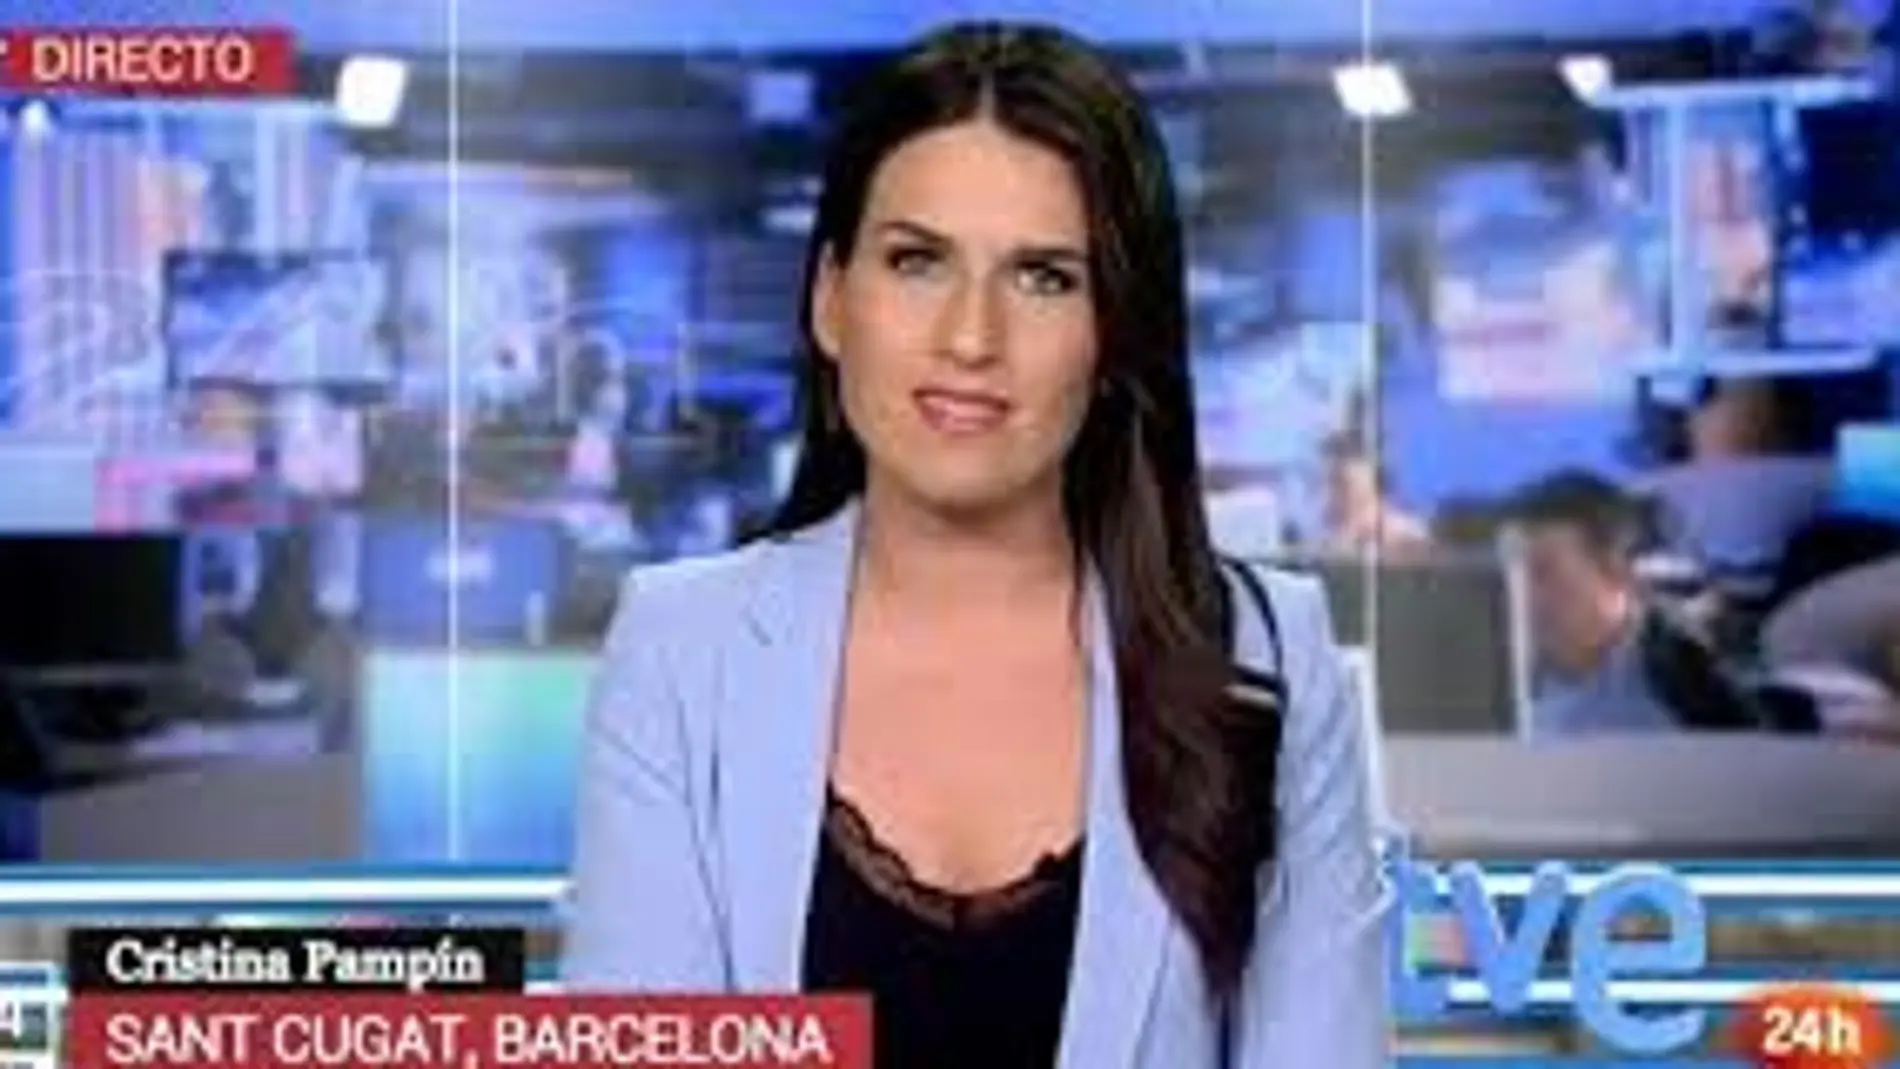 La presentadora del canal 24 horas de RTVE, Cristina Pampín